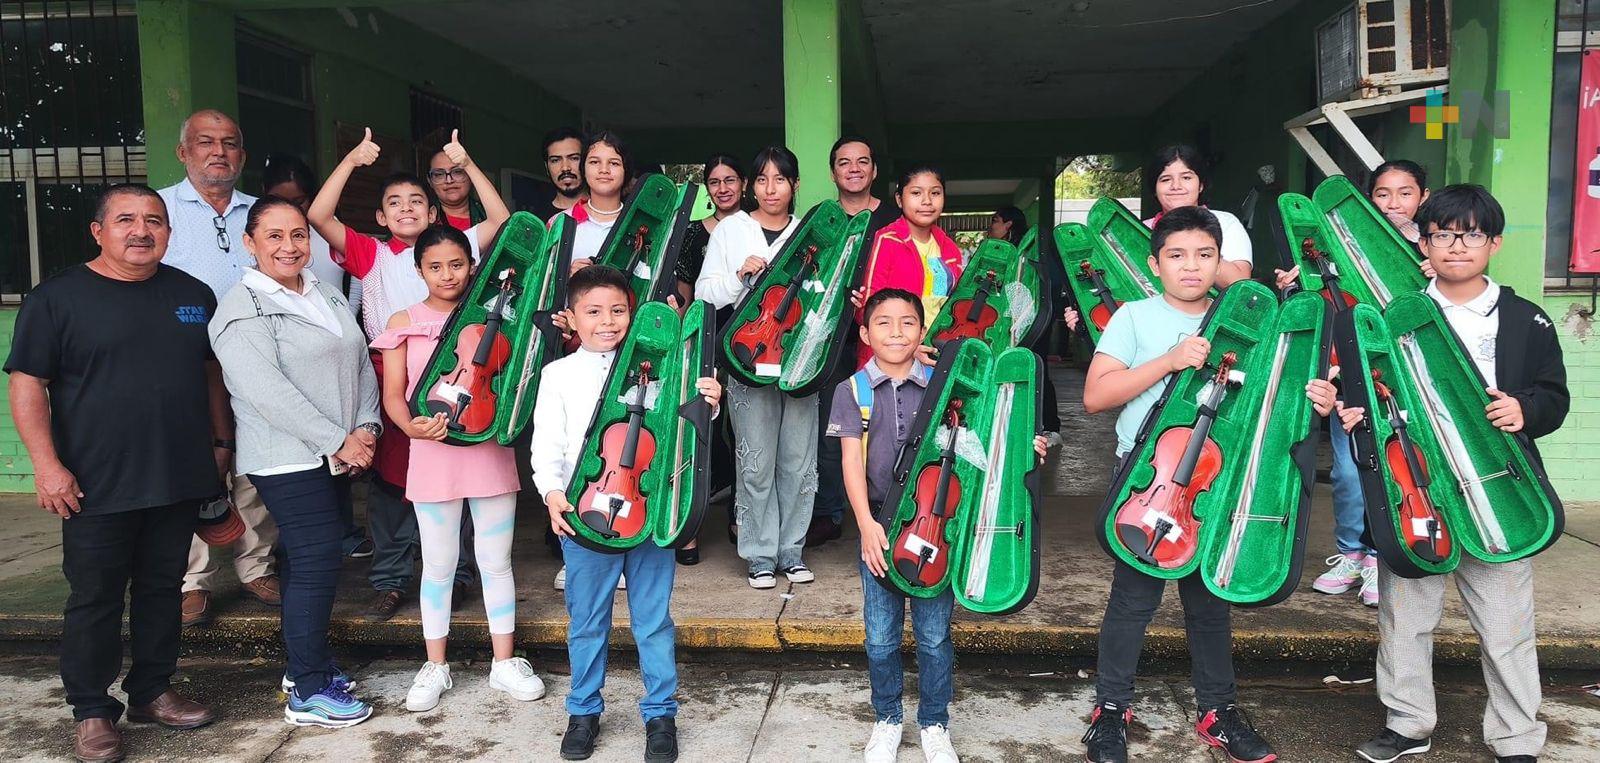 Escuela de Coatza organiza recaudación para reemplazar violines robados